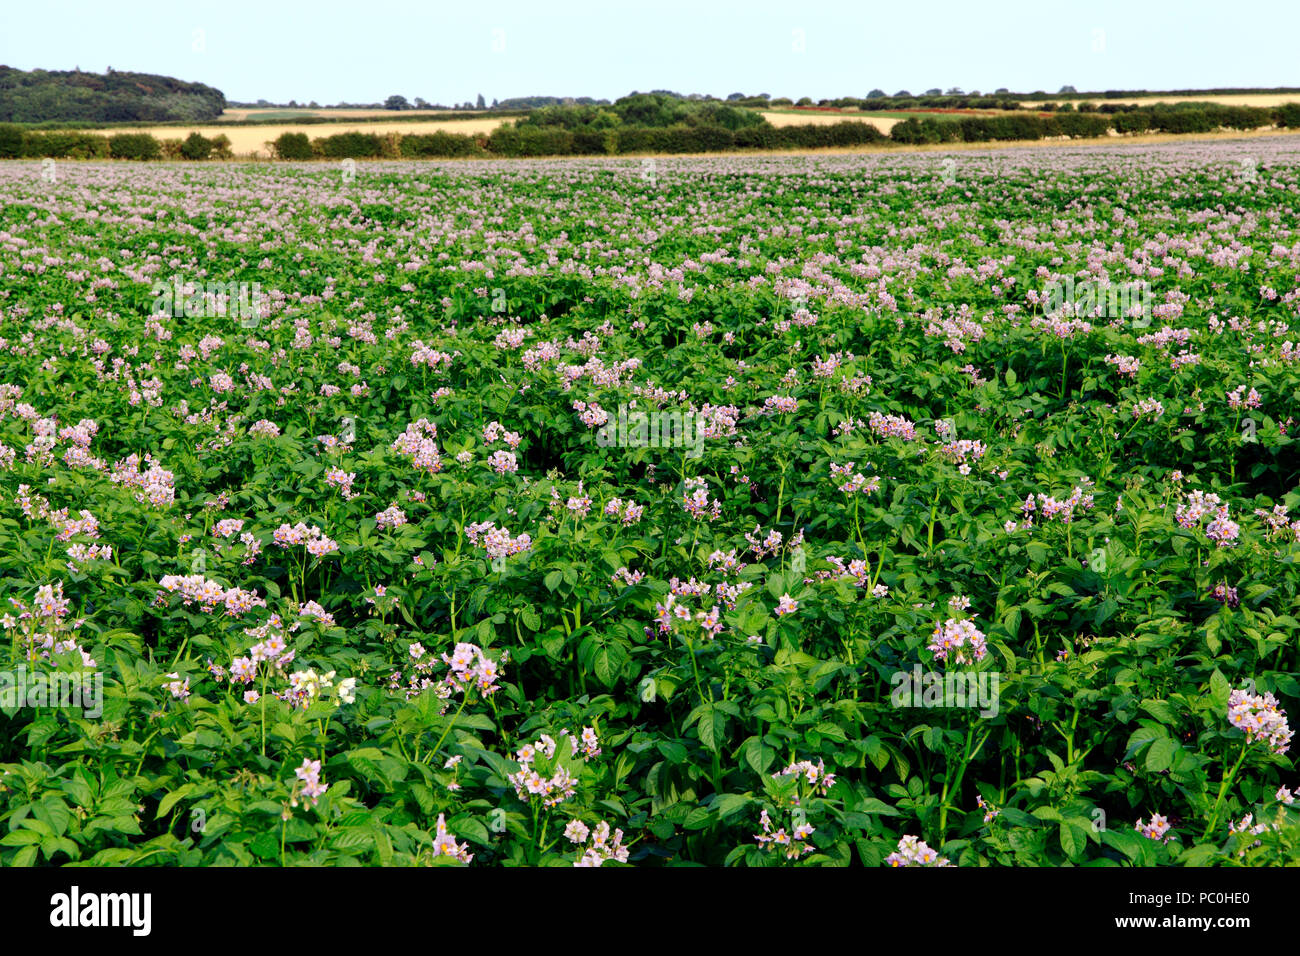 Kartoffel, Feld, Blume, landwirtschaftliche Pflanzen, Wurzelgemüse, Kartoffeln, Landschaft, Norfolk, Großbritannien Stockfoto